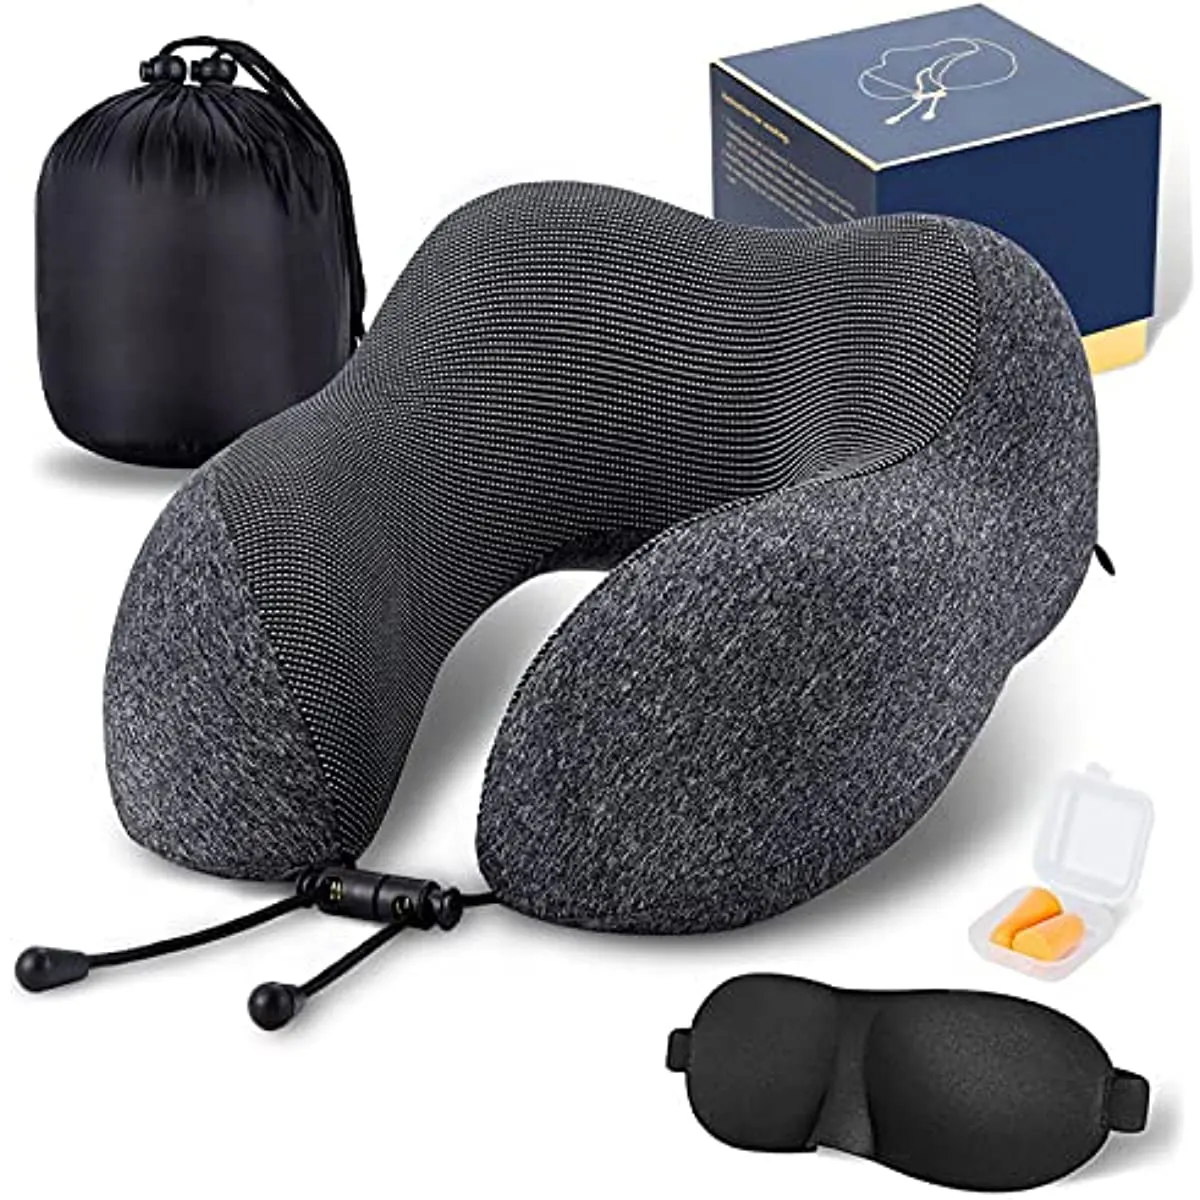 Прямая Продажа с фабрики, дорожная подушка с подарочной коробкой, 3D Контурные маски для глаз, затычки для ушей и роскошная сумка, 100% подушка для шеи из пены с эффектом памяти